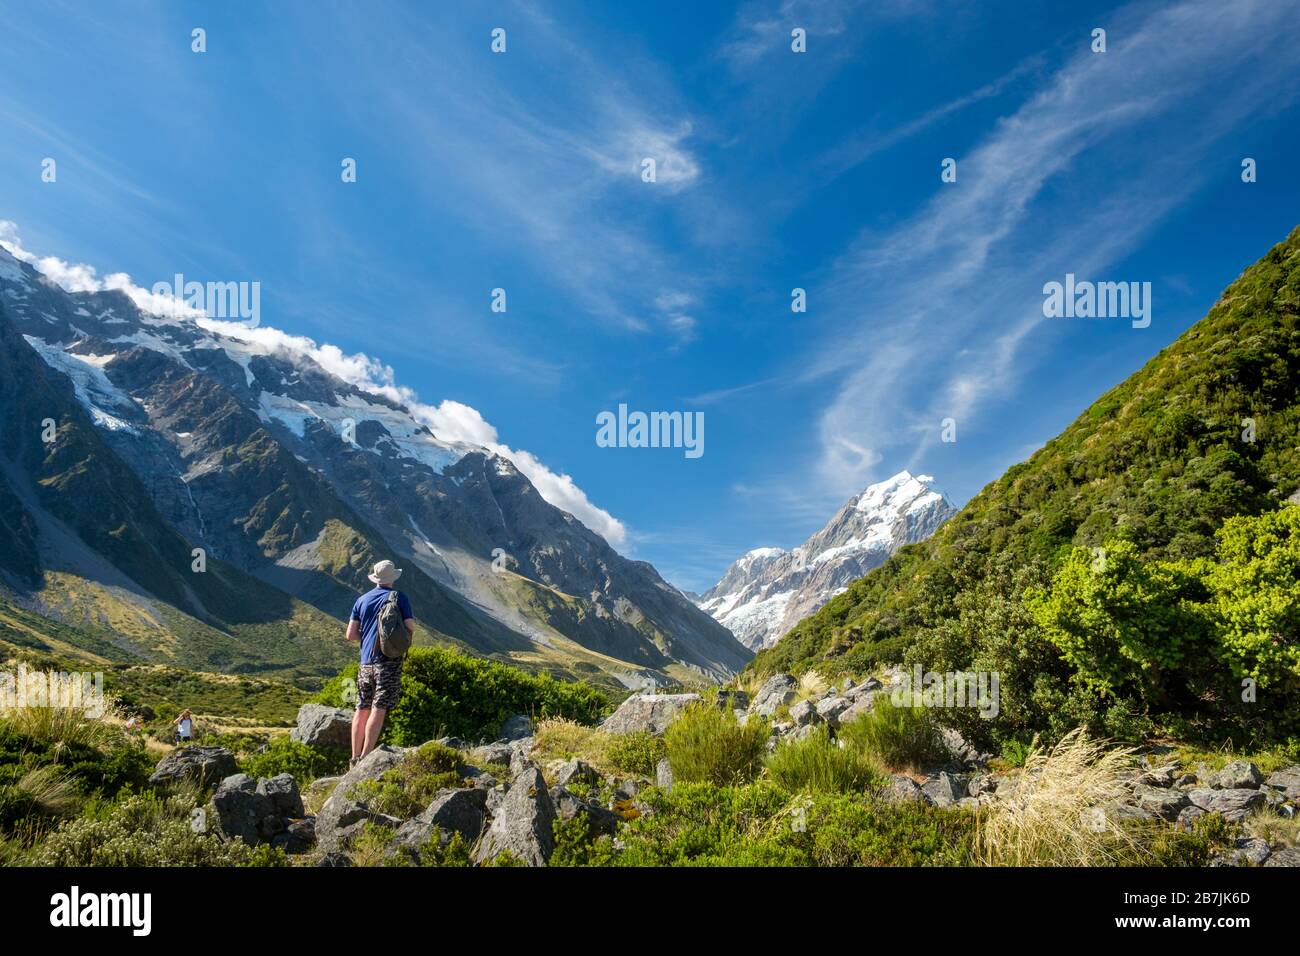 Uomo su una collina erbosa con ghiacciai e montagne innevate, Aoraki/Mount Cook National Park, South Island, Nuova Zelanda Foto Stock